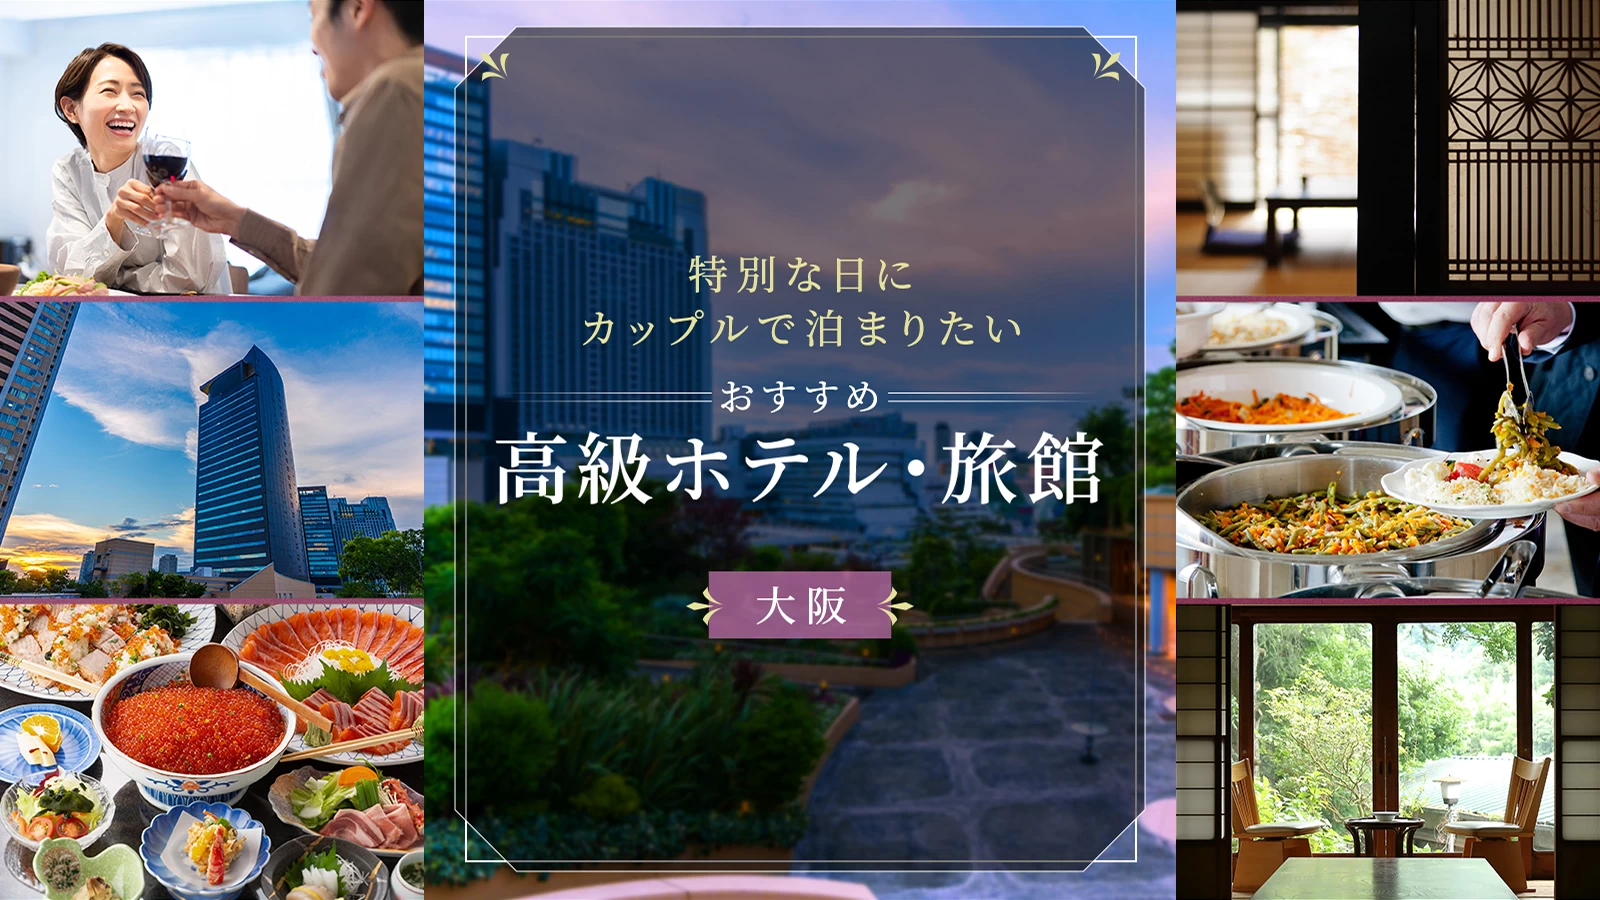 【大阪】特別な日にカップルで泊まりたいおすすめ高級ホテル・旅館6選